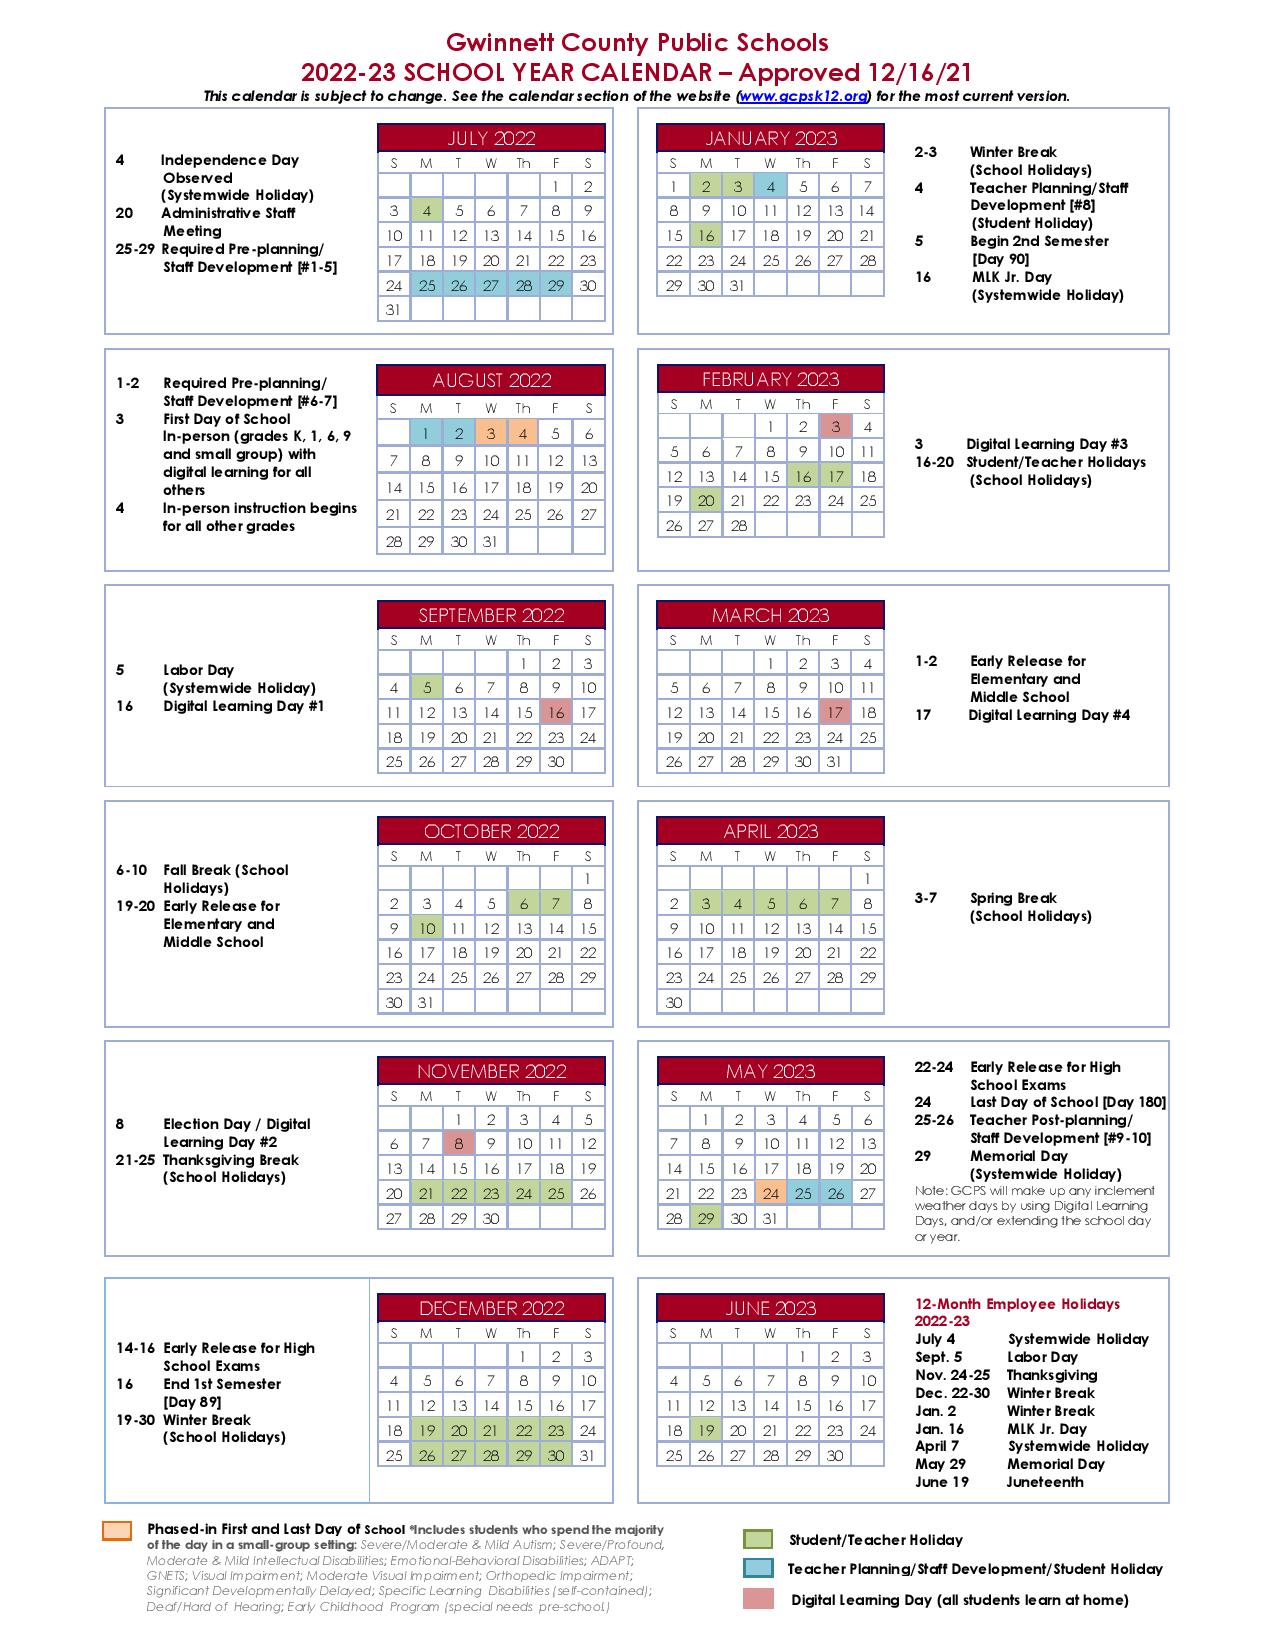 gwinnett-county-public-schools-calendar-holidays-2022-2023